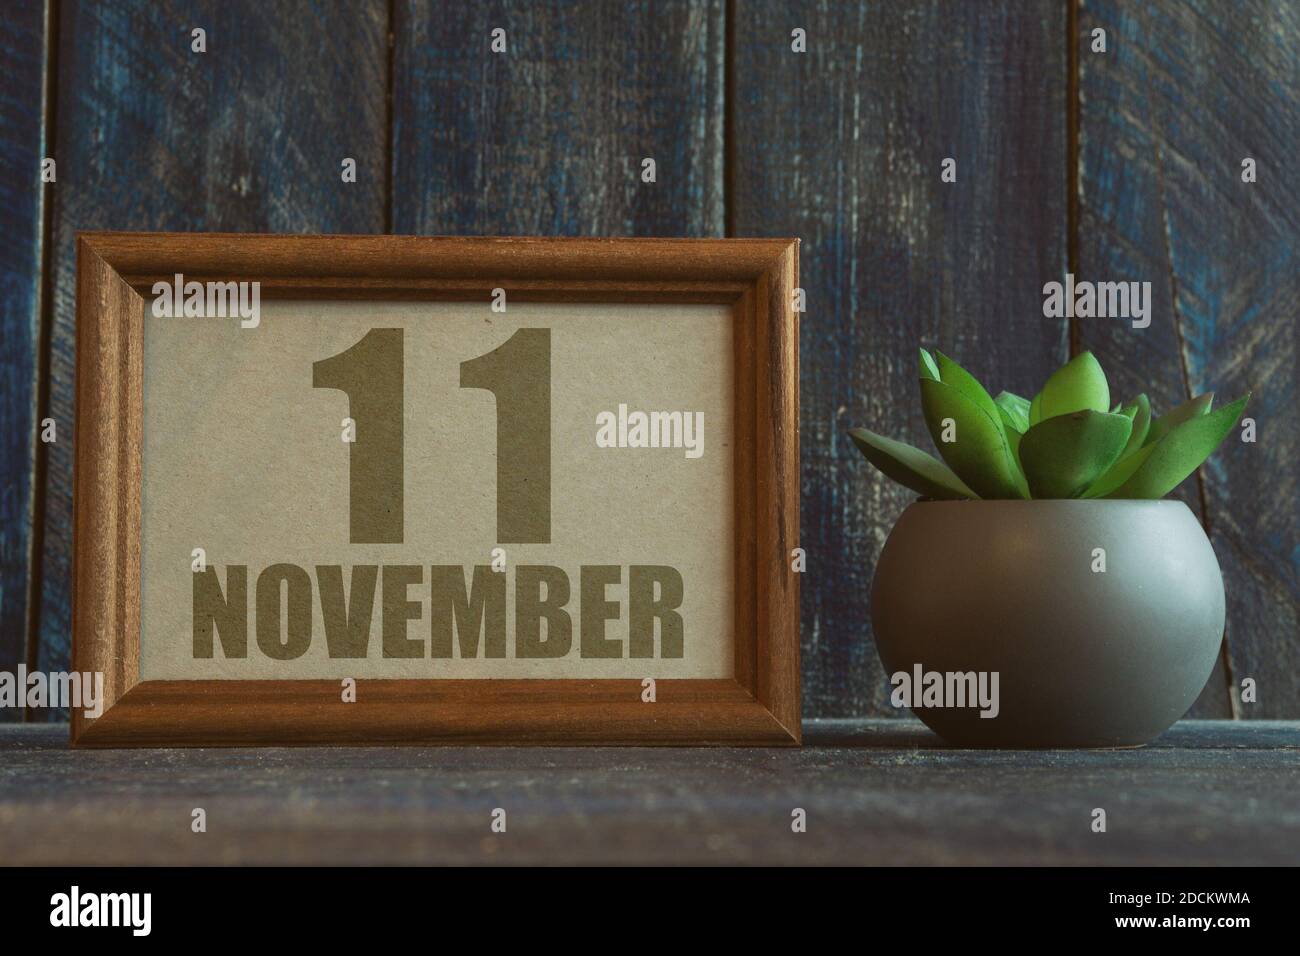 november 11th. Tag 11 des Monats, Datum im Rahmen neben Sukkulente auf Holzhintergrund Herbstmonat, Tag des Jahres Konzept Stockfoto